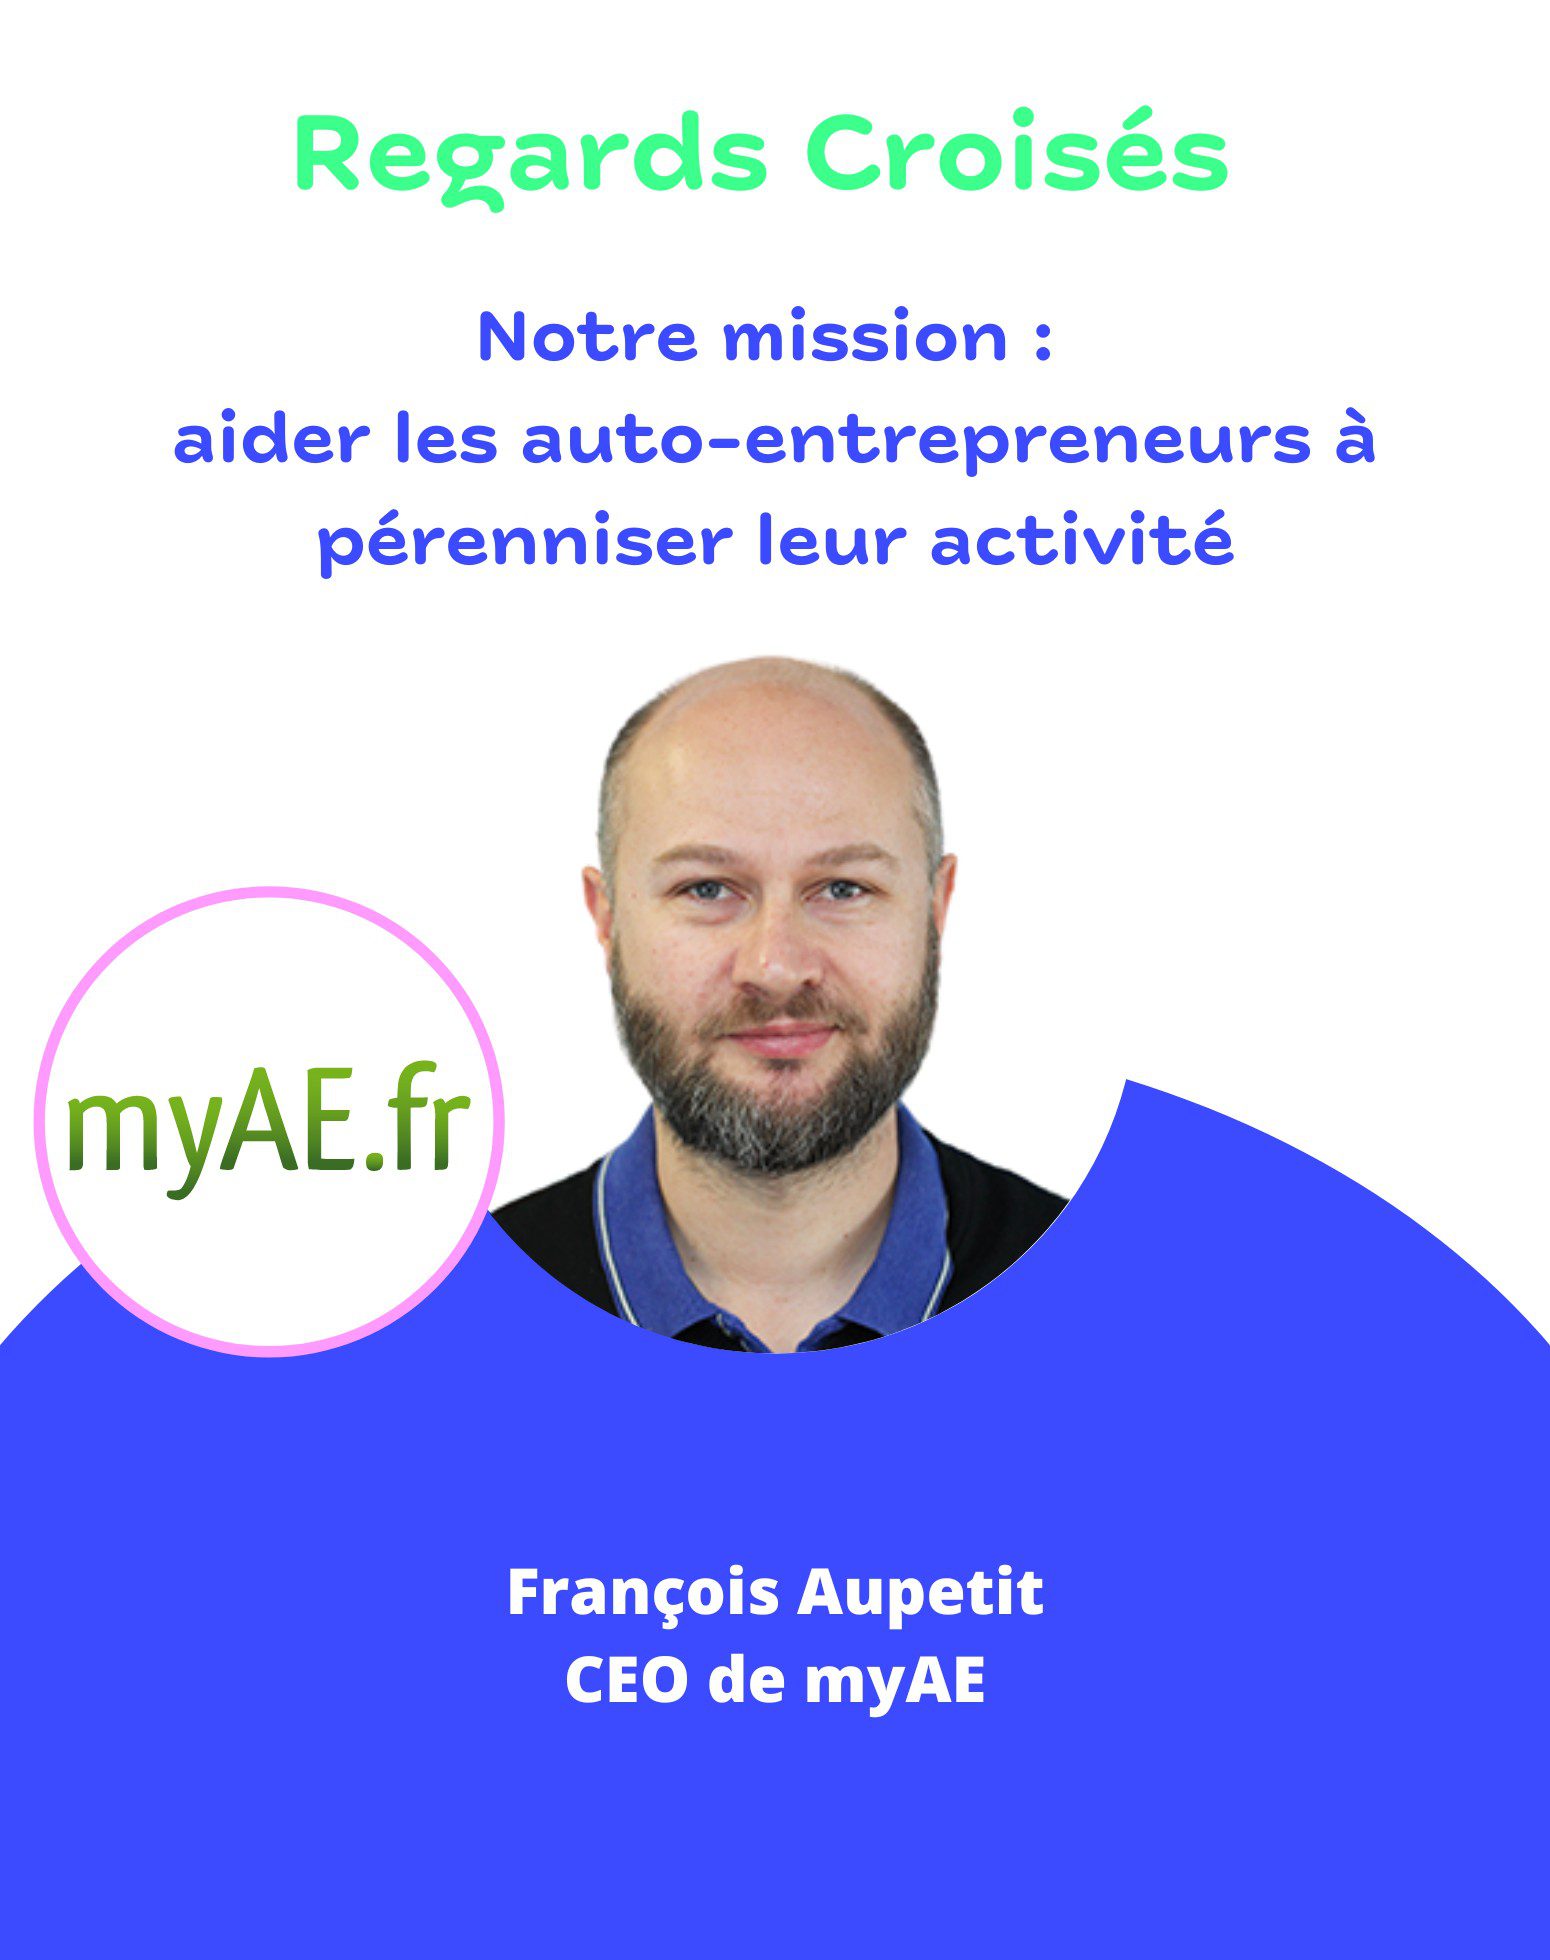 François Aupetit, fondateur et CEO de myAE.